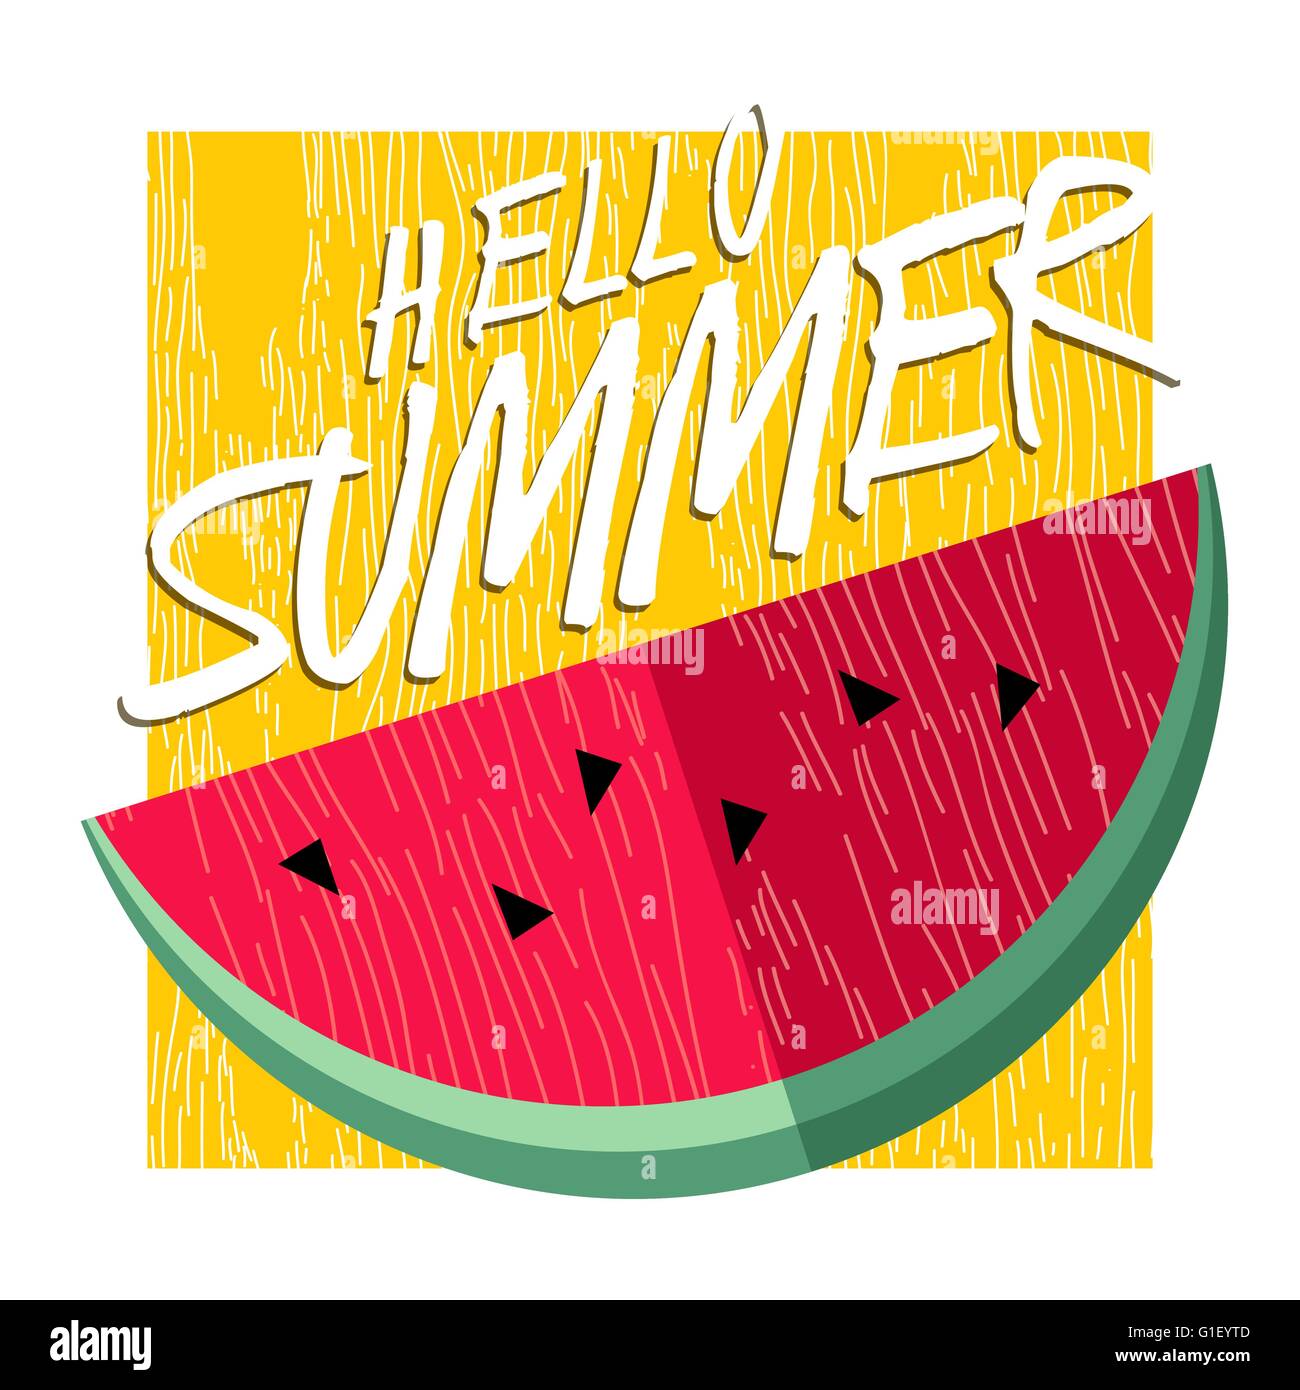 Hallo Sommer Schriftzug Hintergrund Design mit Wassermelone, gesunde Ernährung Konzept Früchte Illustration. Sommer-Party-Einladung Stock Vektor